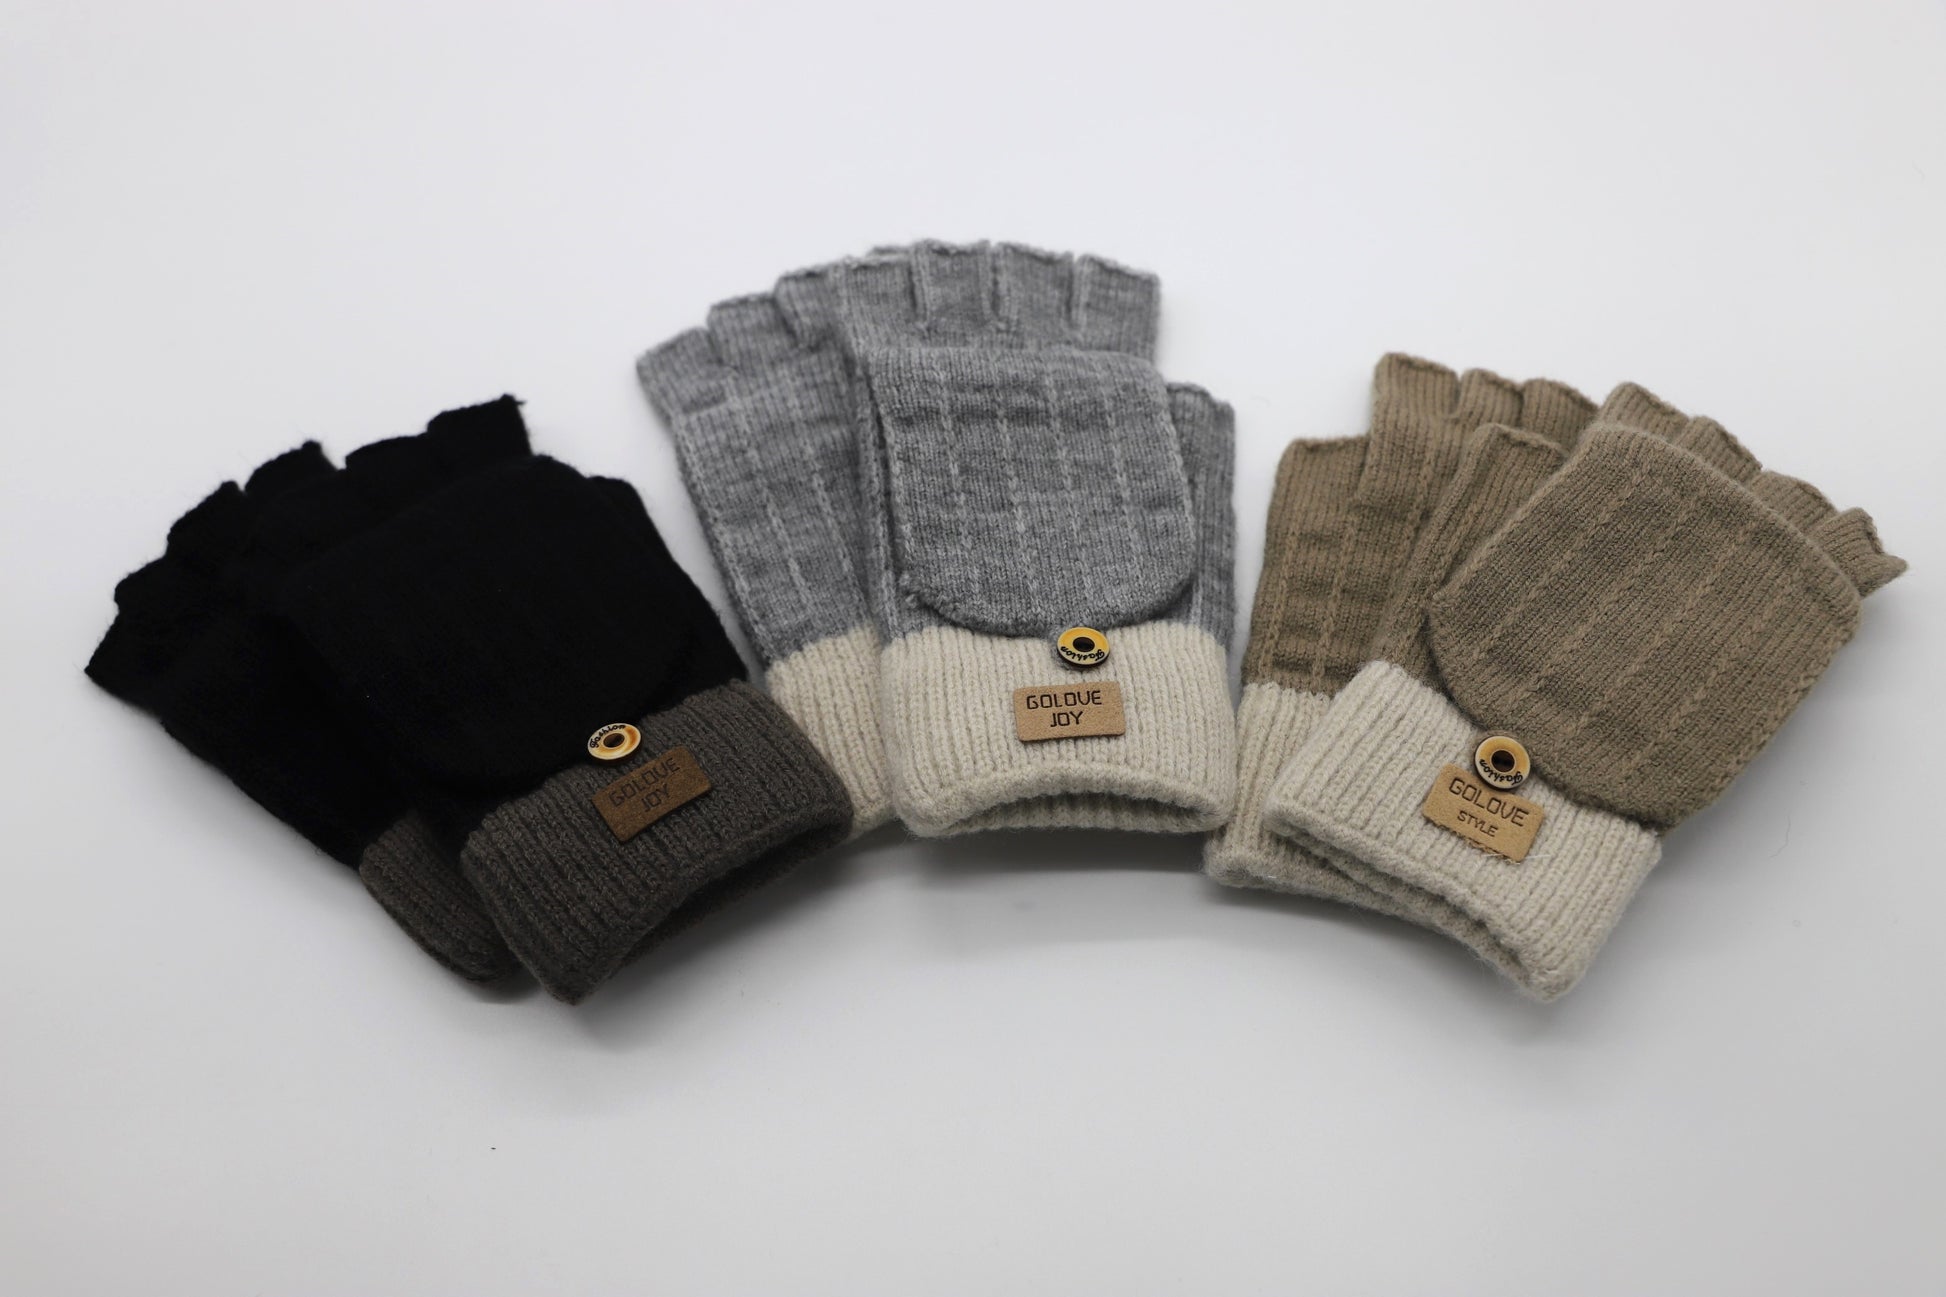 Warm Flip-Top Gloves for Women from Wool Blend - Mocha Beige - Scarf Designers